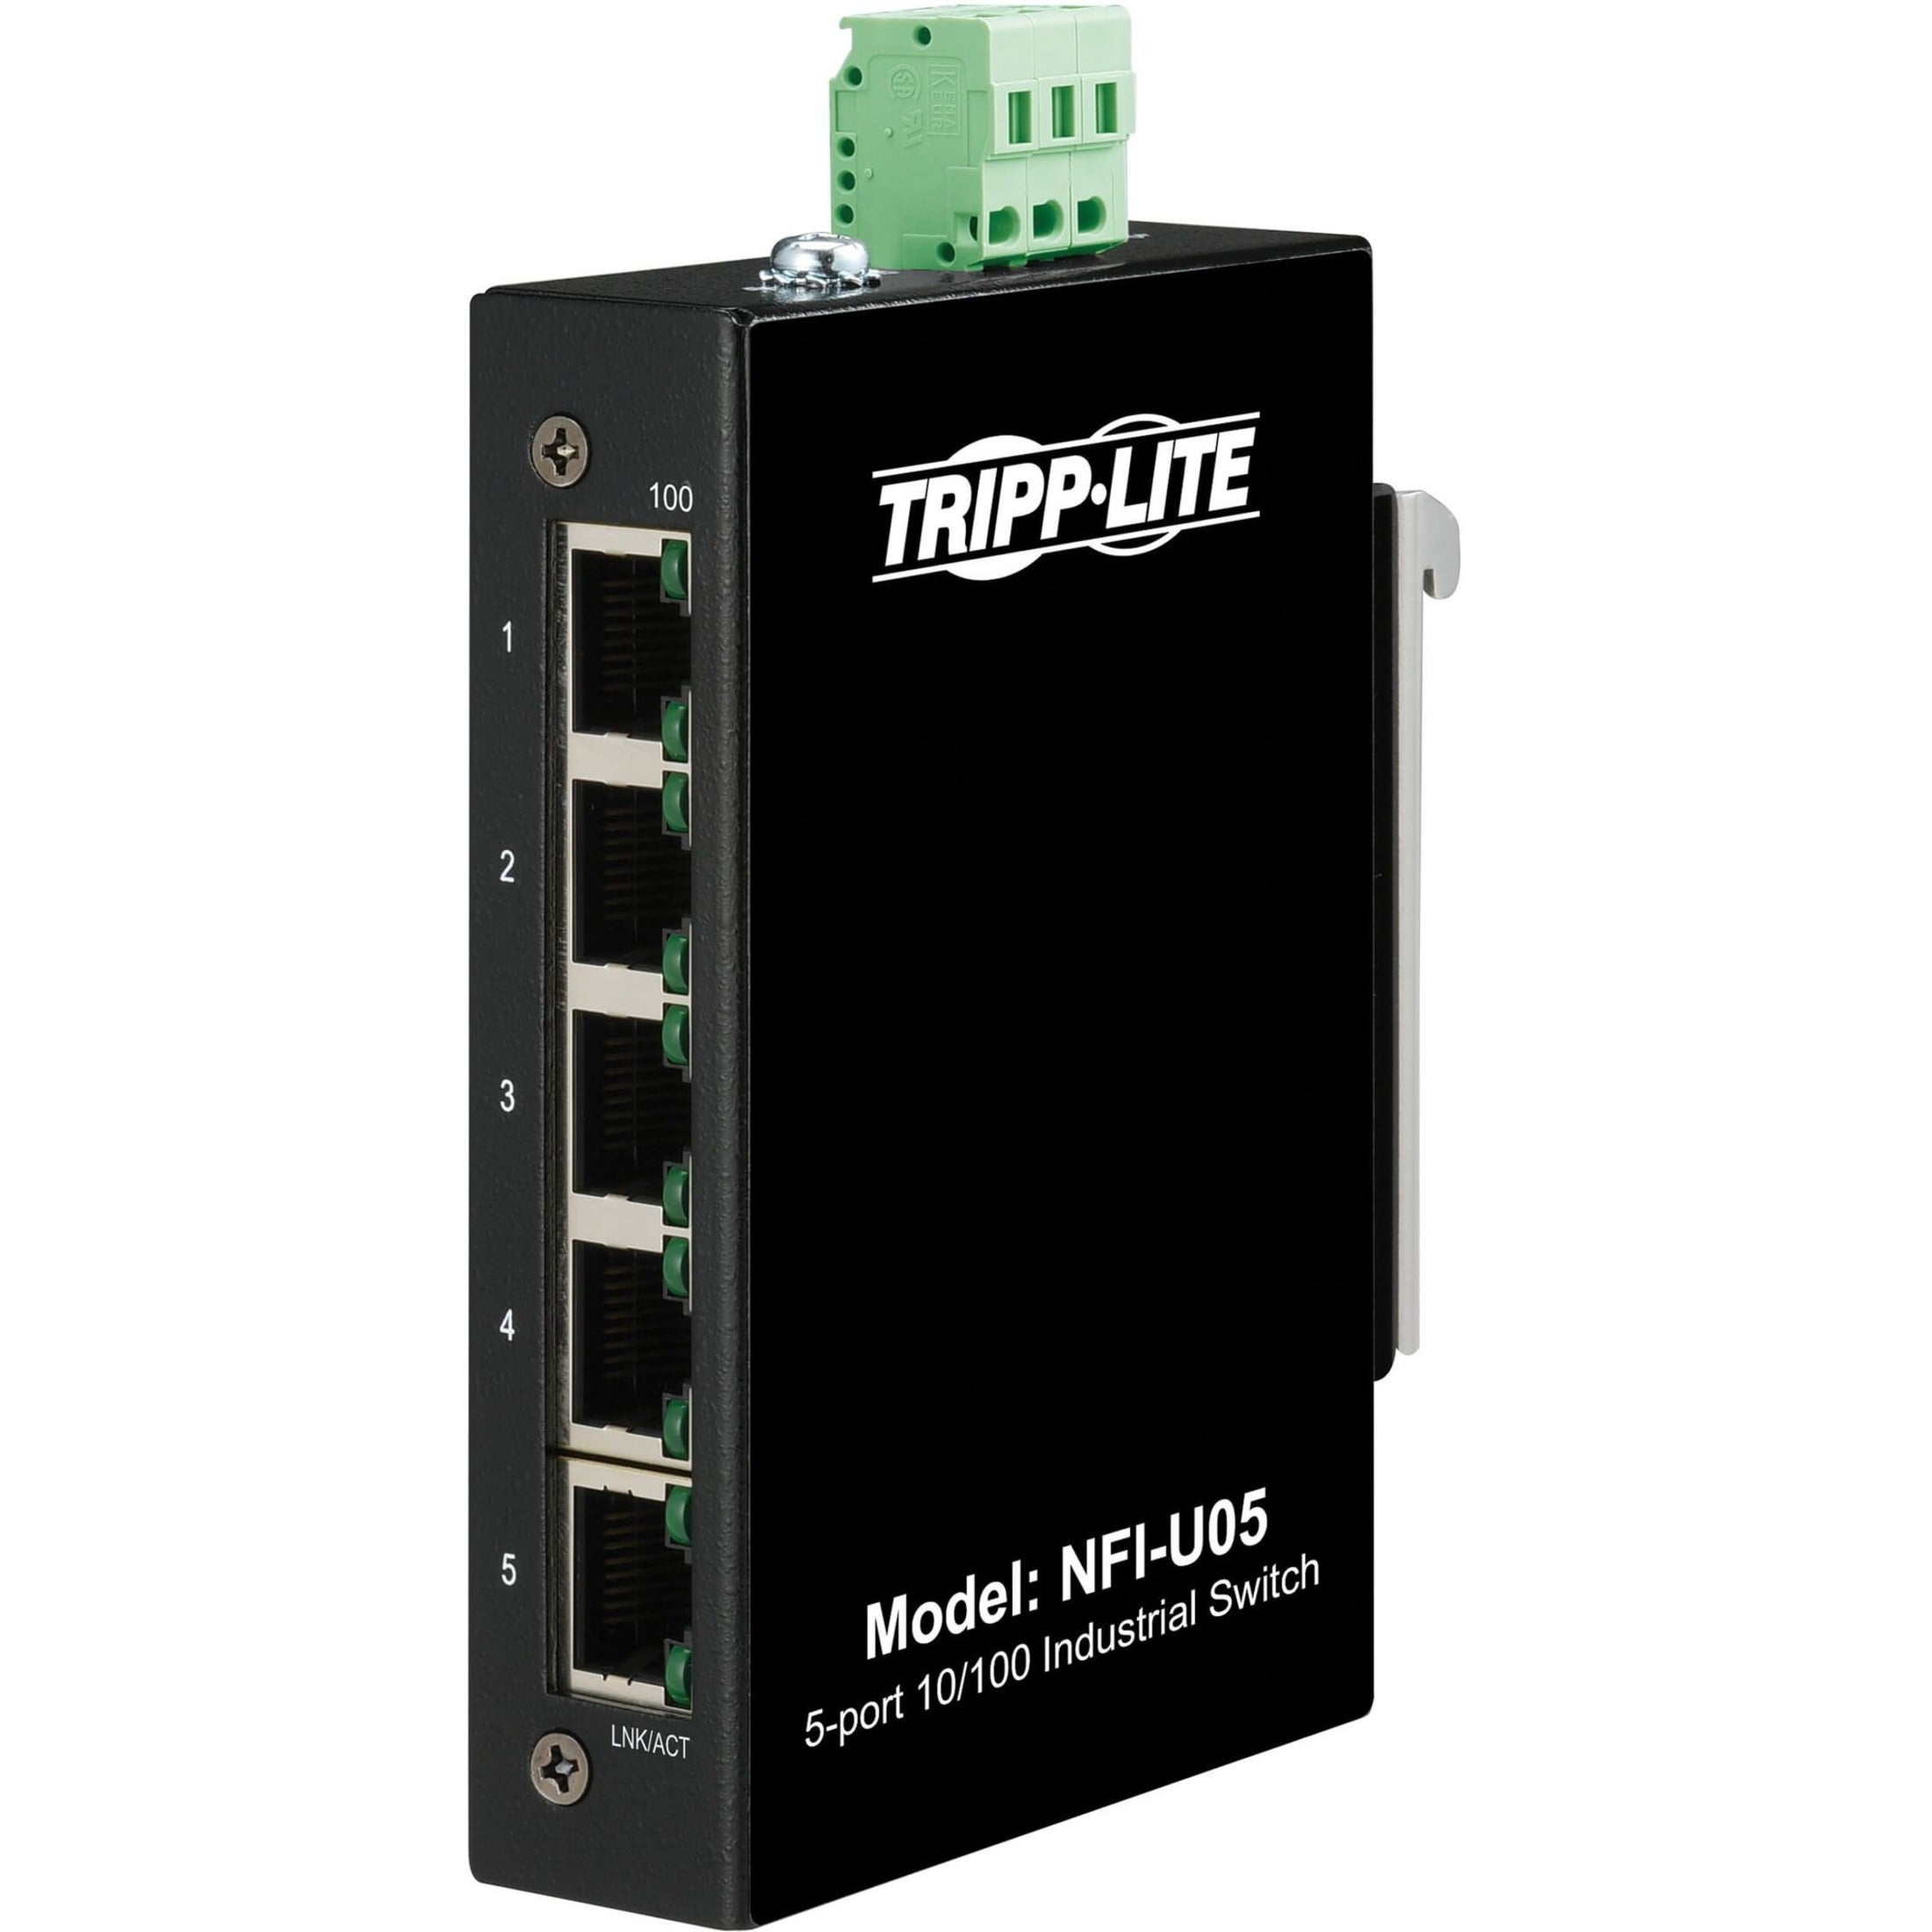 Tripp Lite NFI-U05 Ethernet Switch, Unmanaged 5-Port Industrial DIN Mount 10/100 Mbps